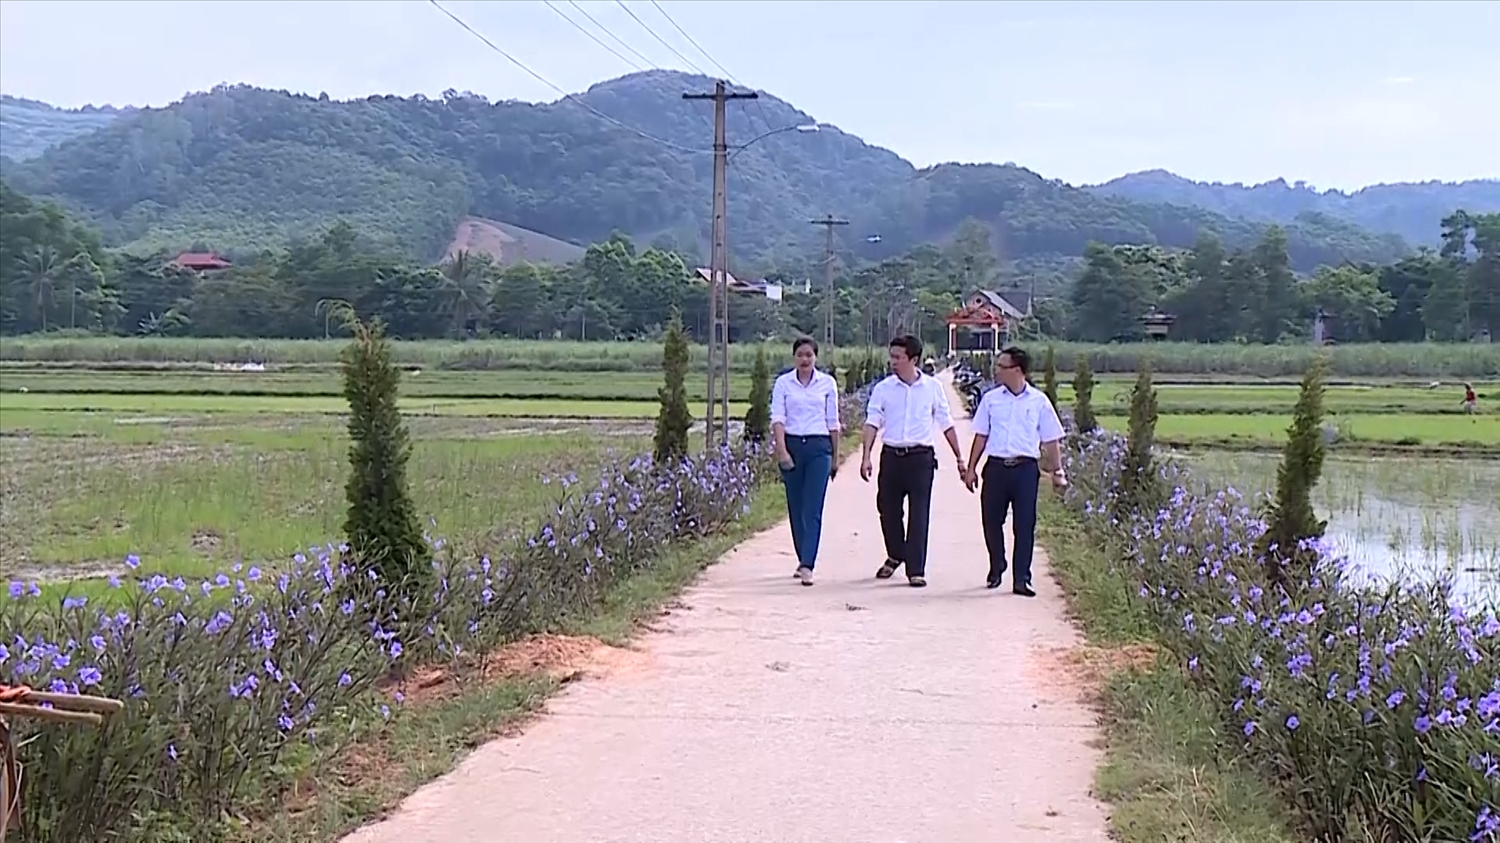 Phong trào “Hàng rào xanh”, con đường hoa NTM ở miền núi Thanh Hóa